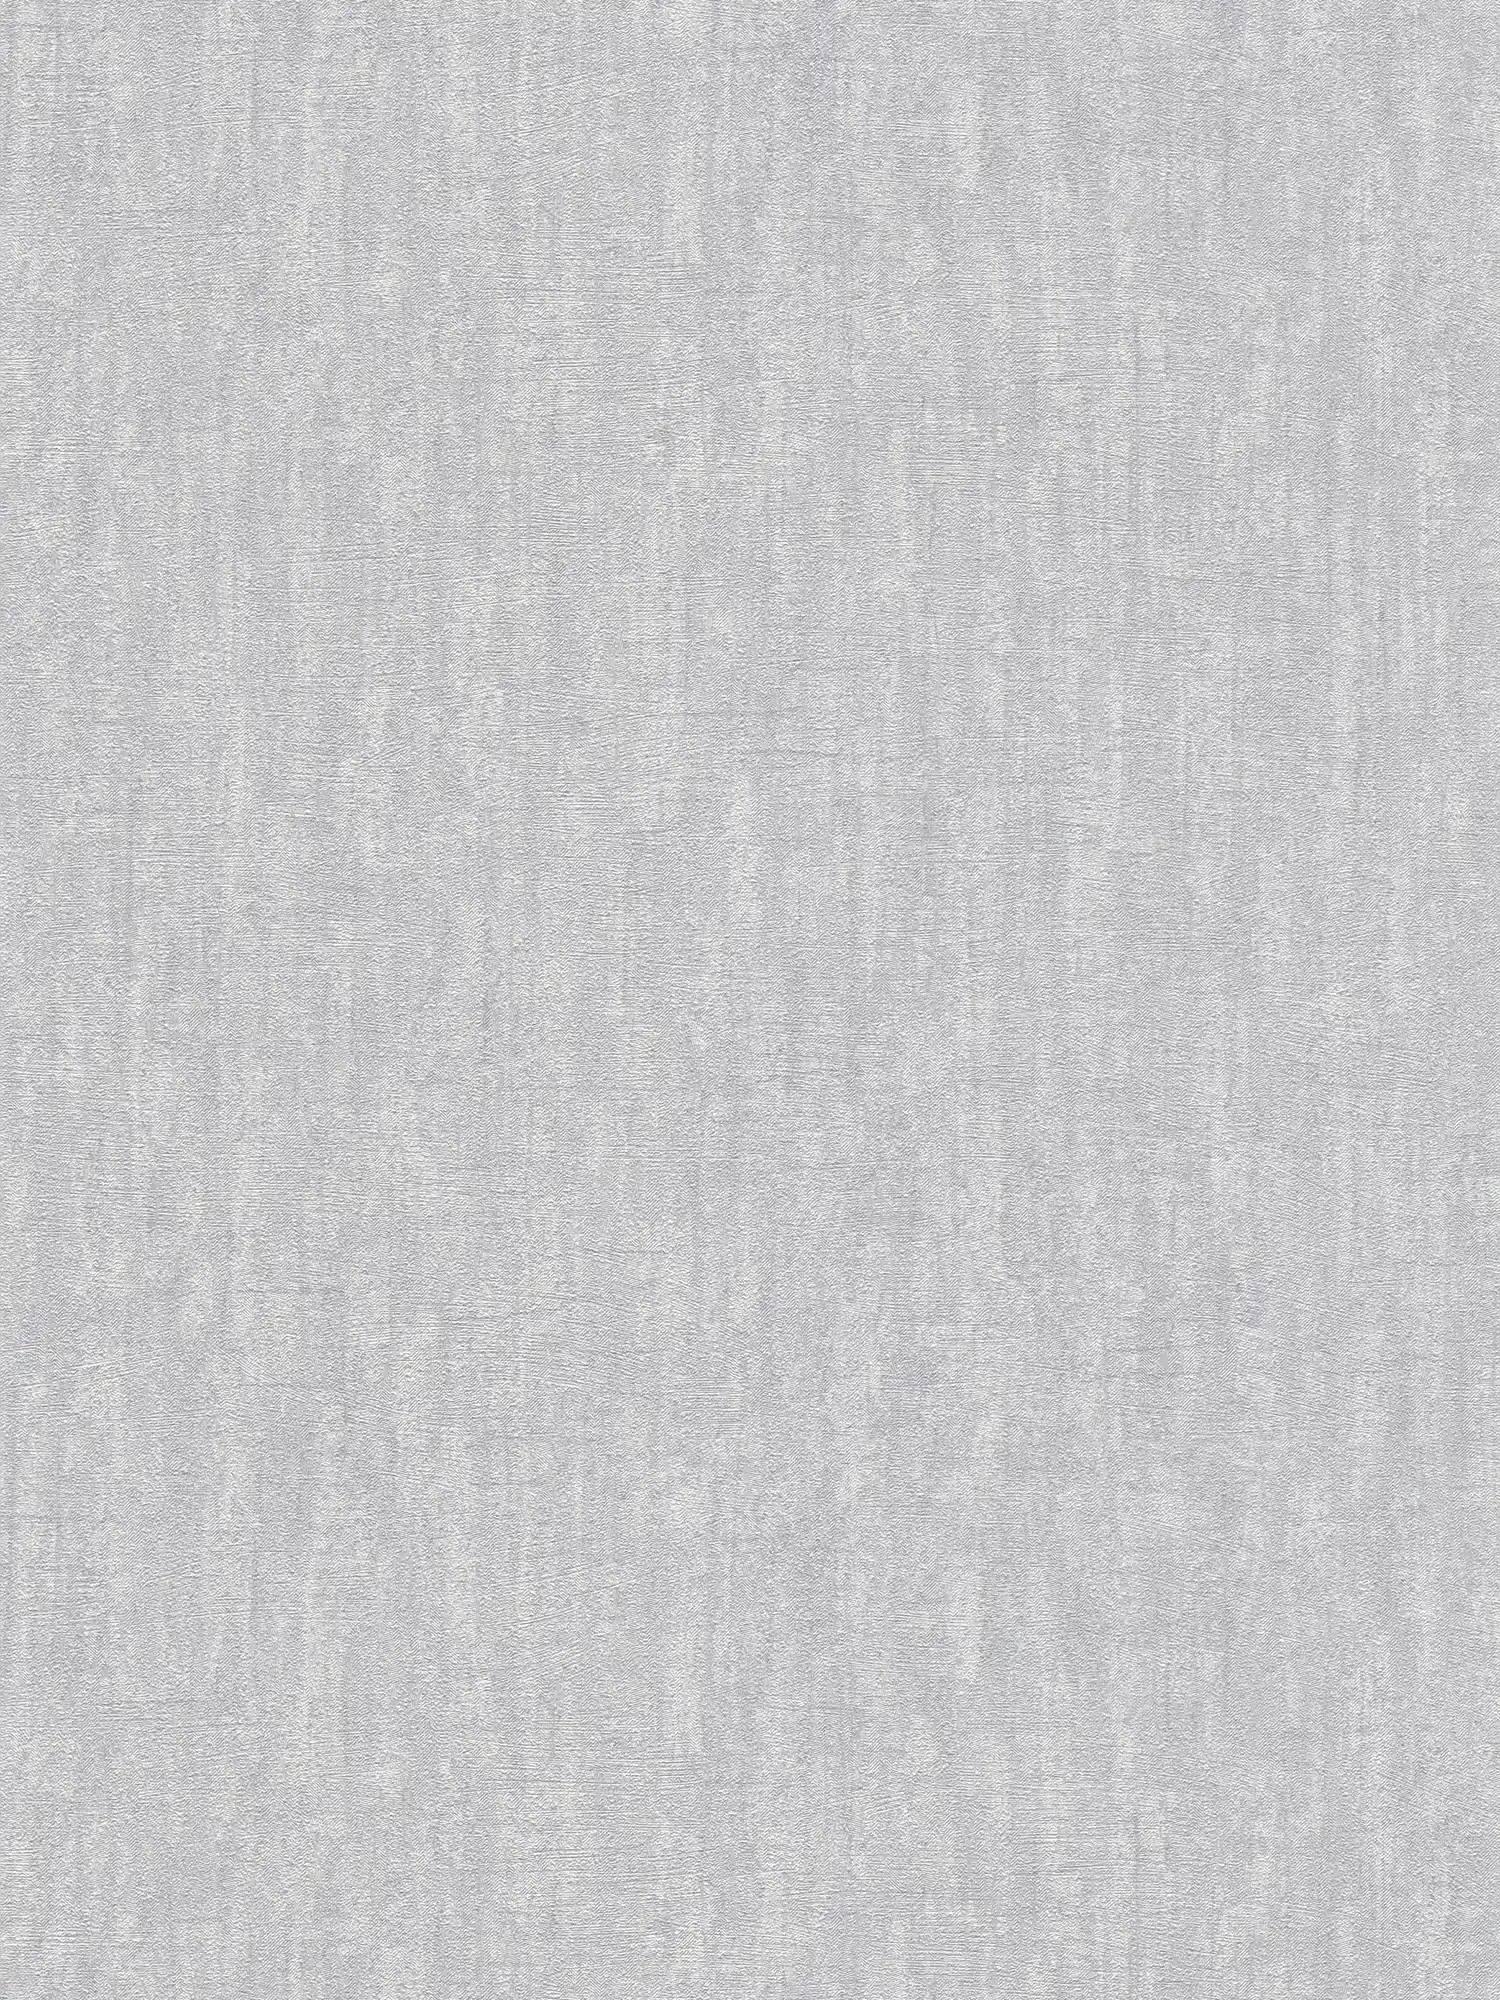 Hellgraue Tapete mit Strukturmuster, glänzend – Grau
